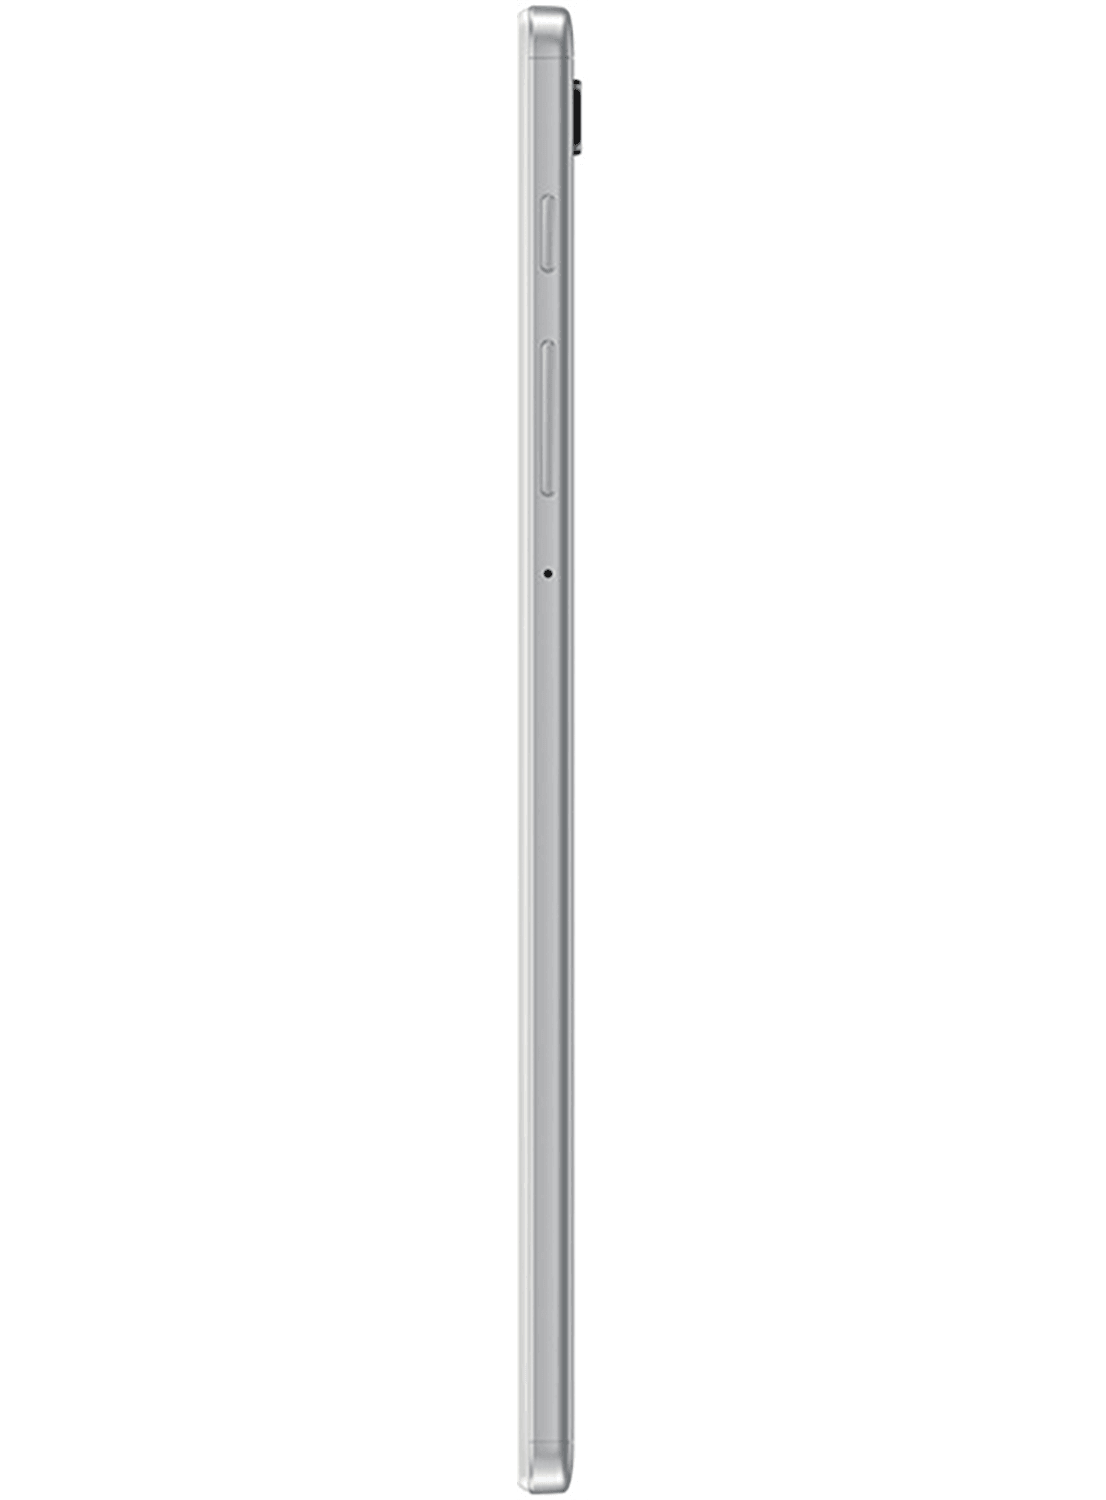 Samsung Galaxy Tab A7 Lite 32GB